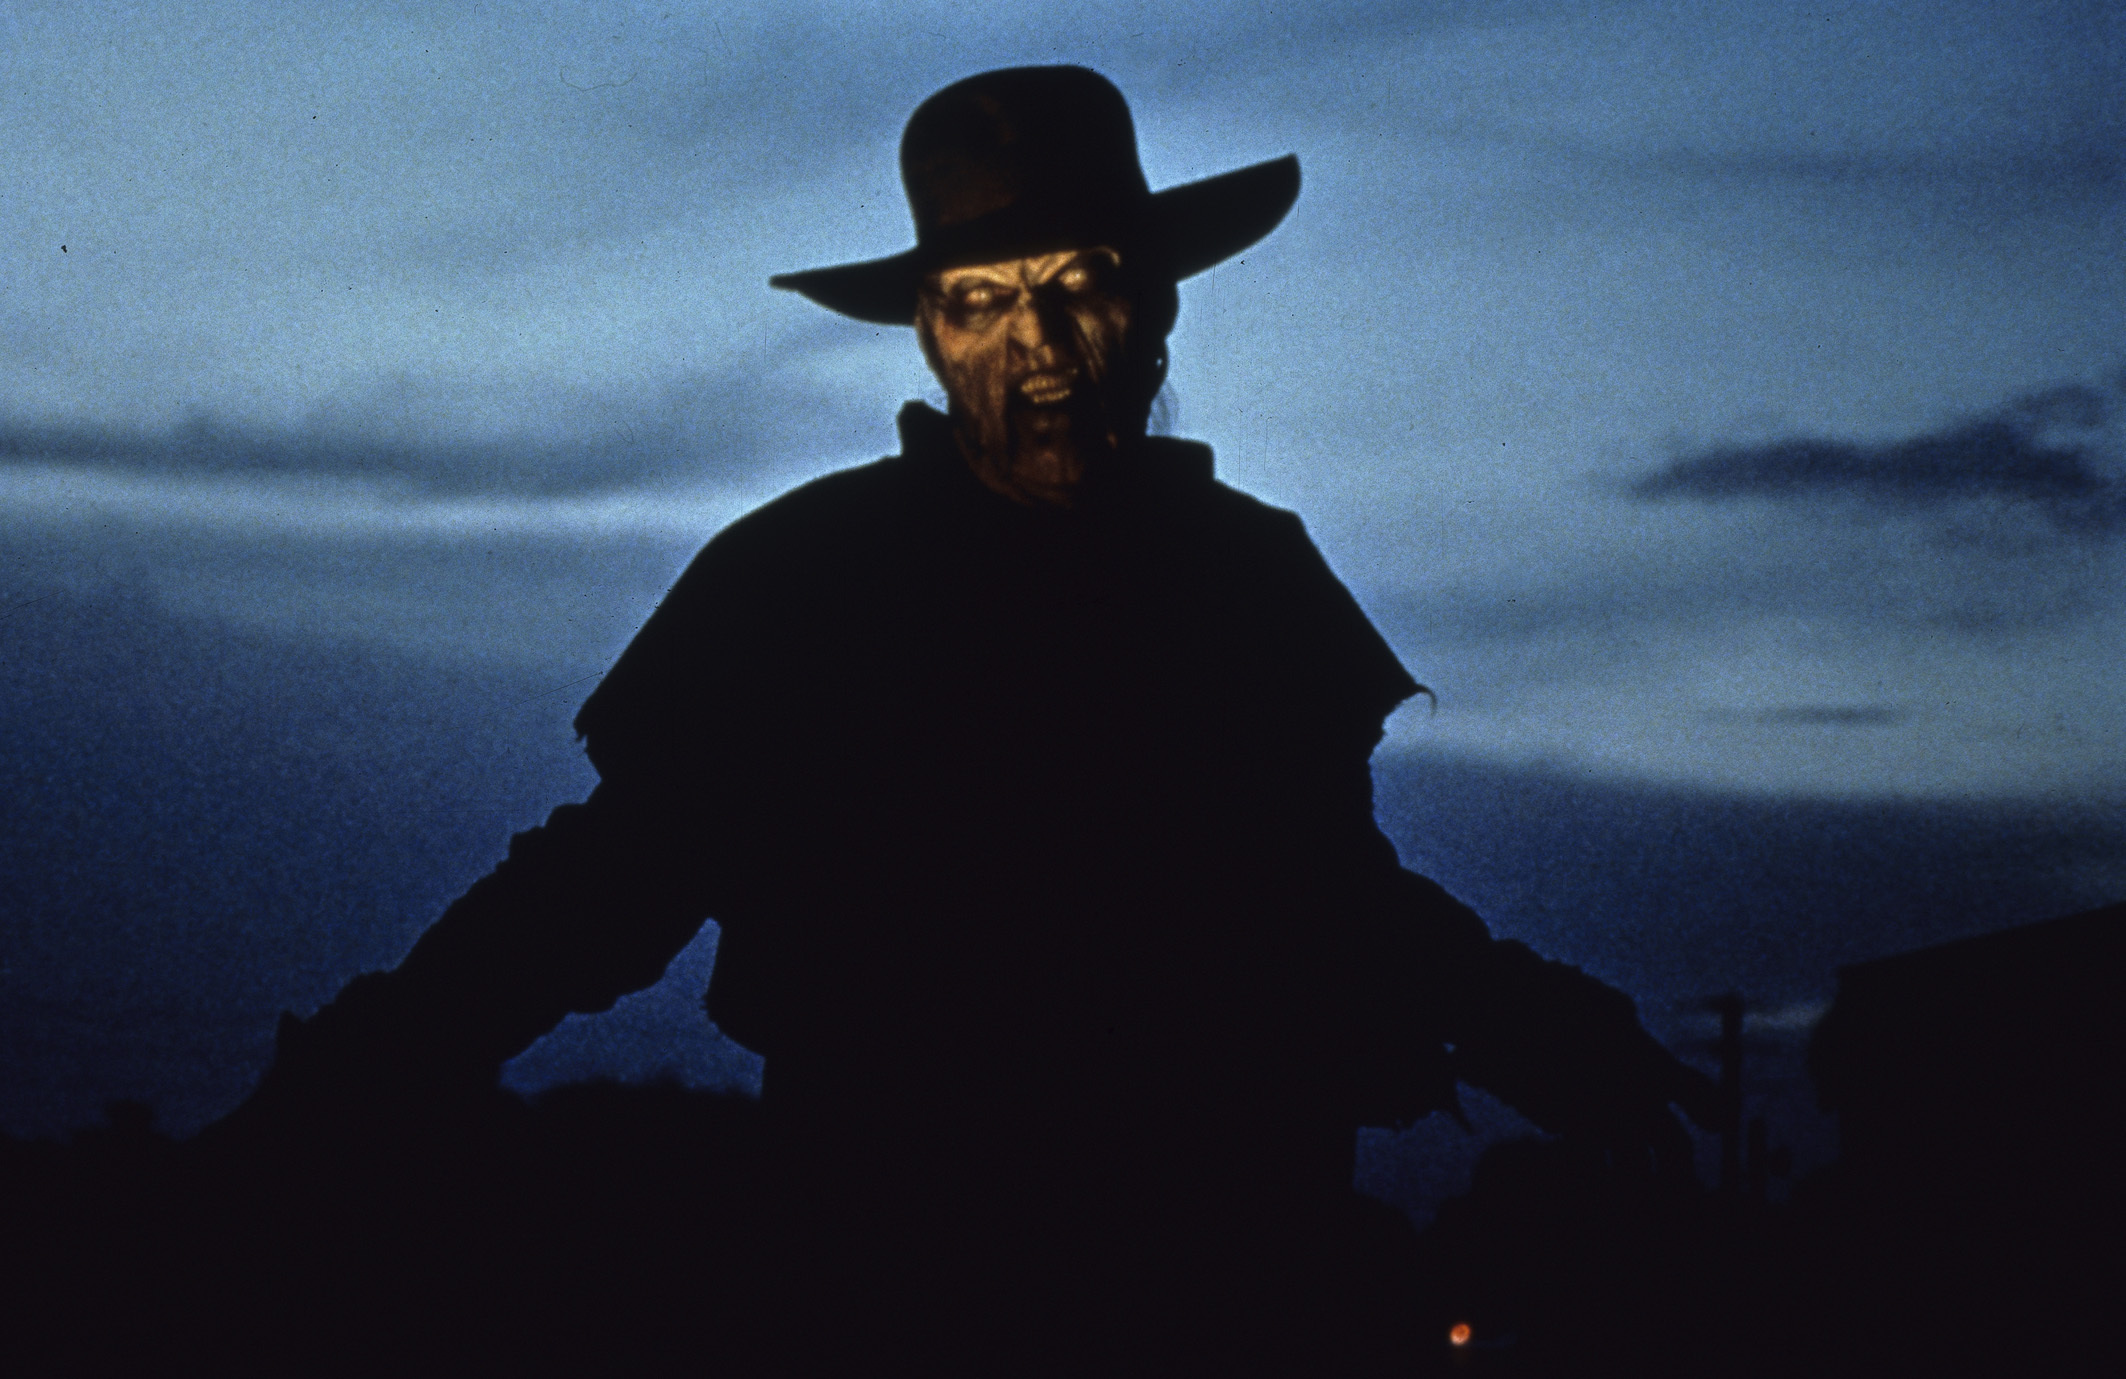 Nacht für Nacht ist "The Creeper" (Jonathan Breck) auf der Suche nach neuen Opfern.